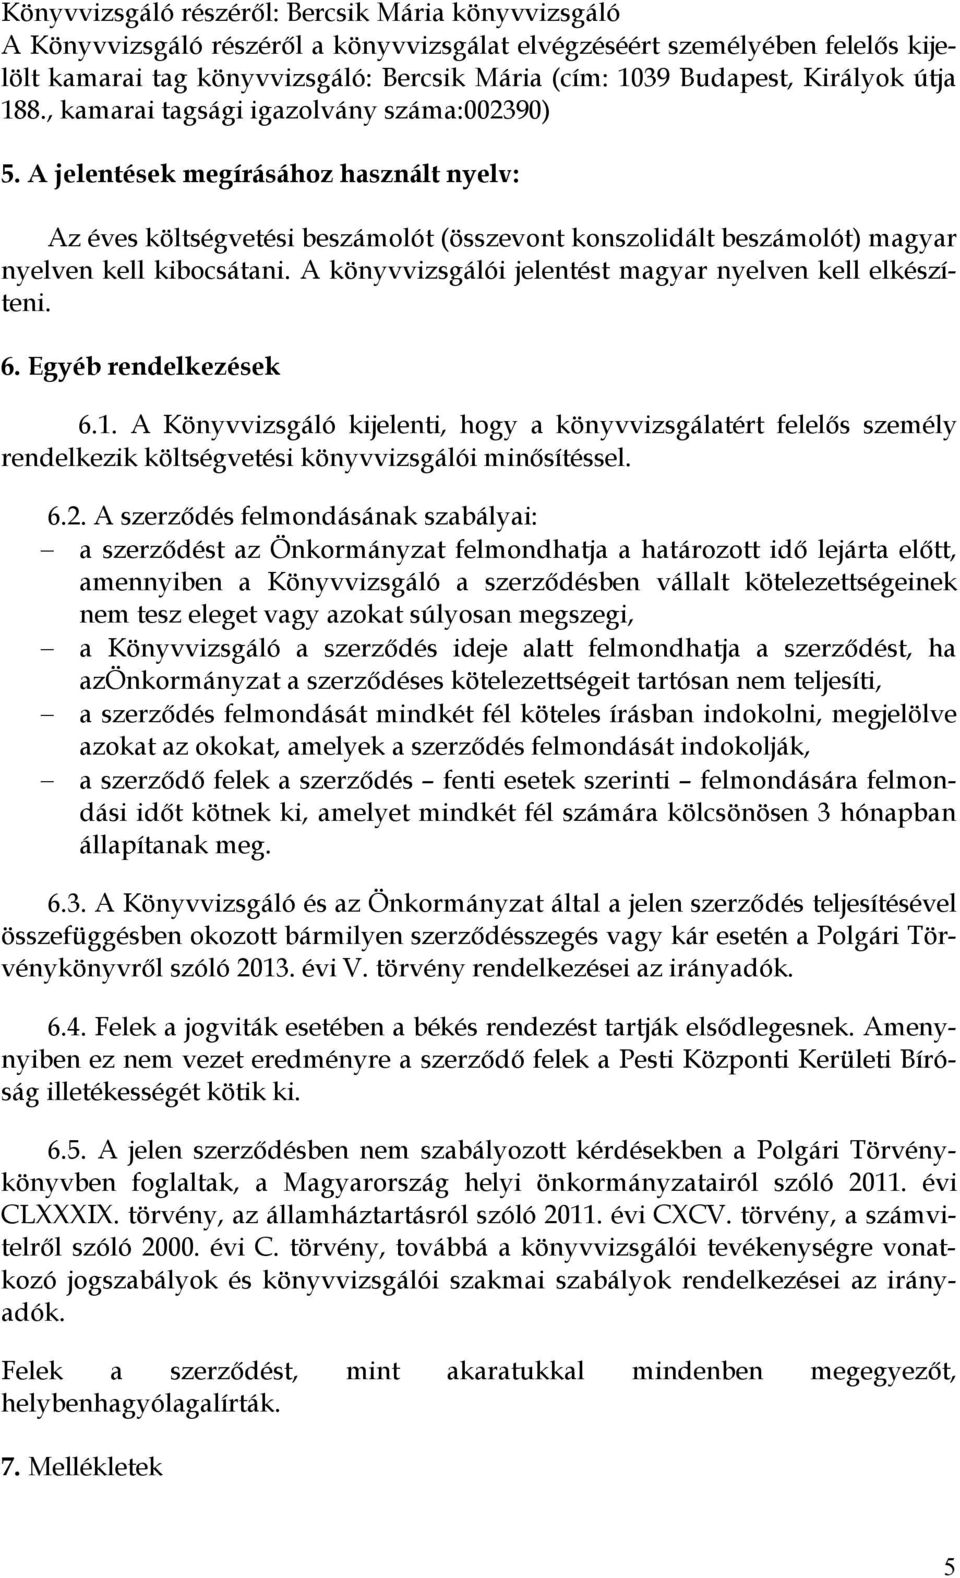 A jelentések megírásához használt nyelv: Az éves költségvetési beszámolót (összevont konszolidált beszámolót) magyar nyelven kell kibocsátani.